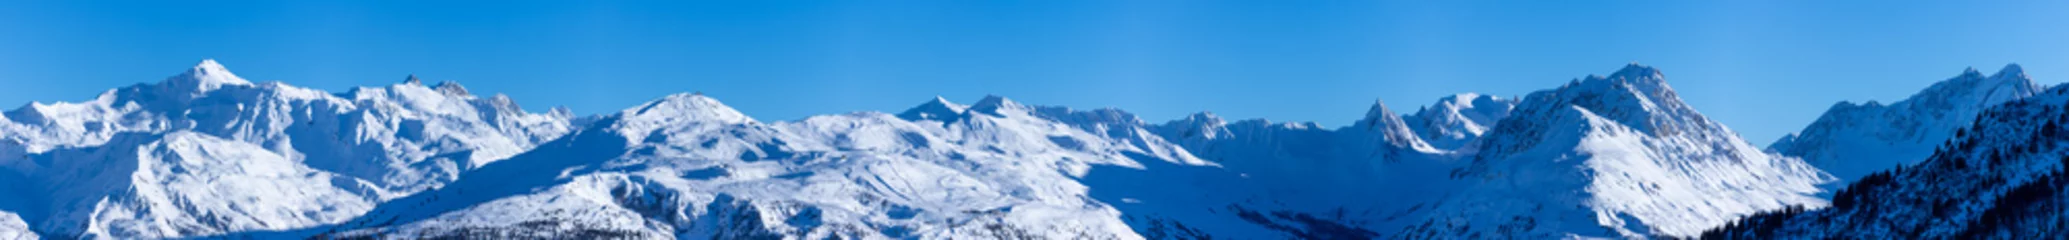 Meubelstickers vue ultra panoramique sur une chaîne de montagnes enneigées des alpes © Tof - Photographie